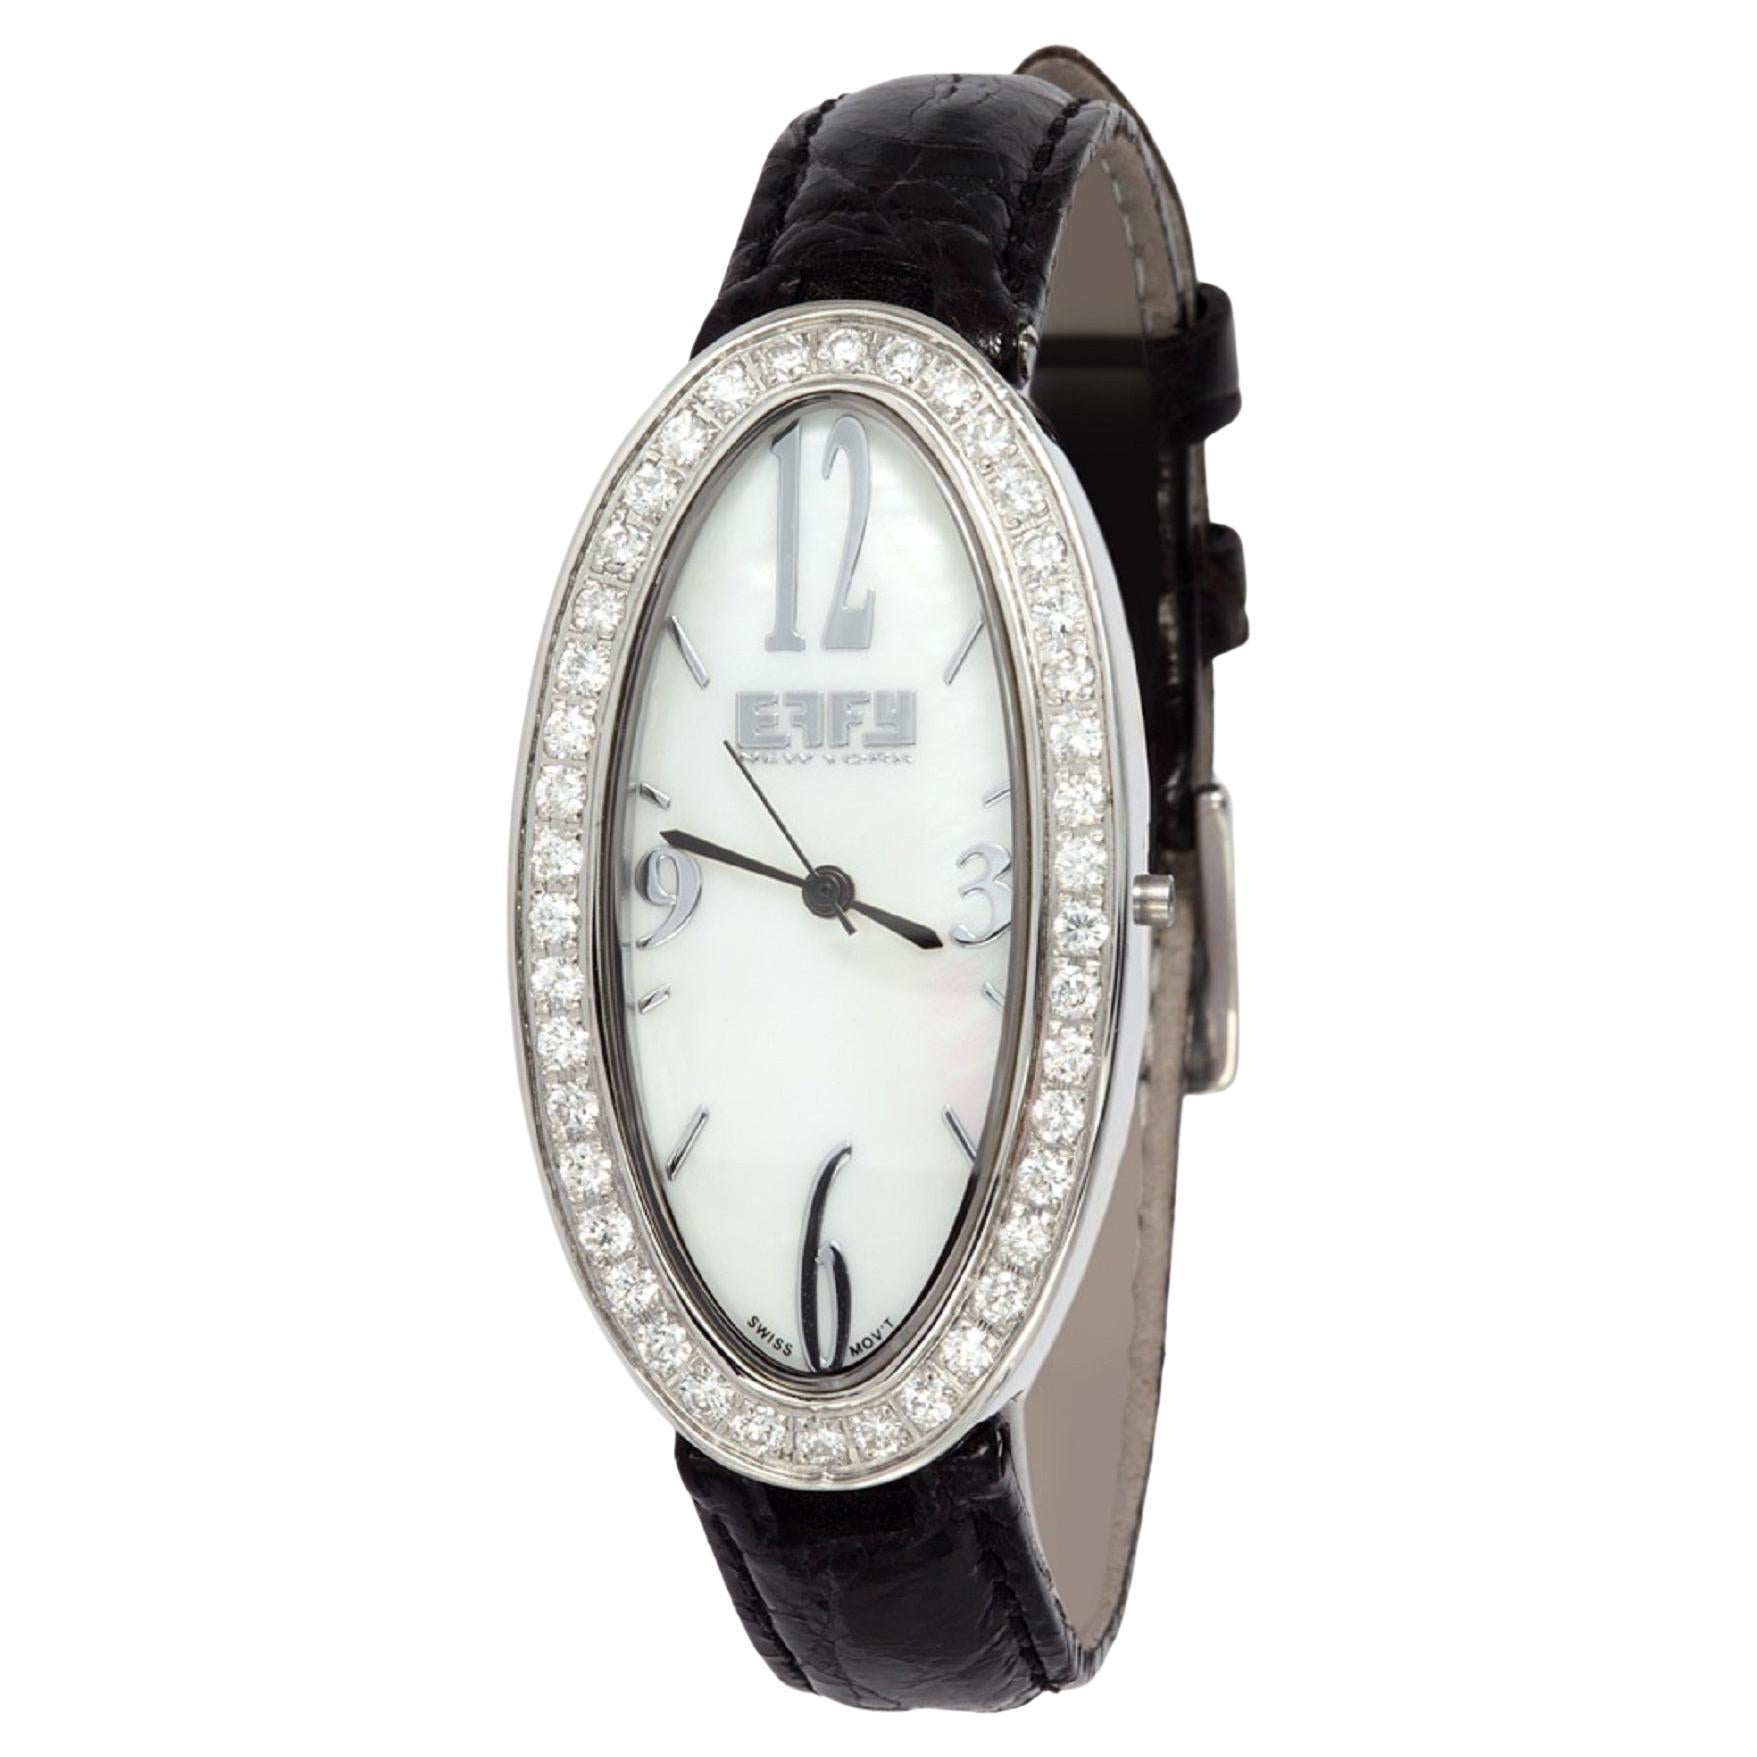 Diamanten Pave Zifferblatt Luxus Schweizer Quarz Exotische Lederband Uhr 1,58 CT